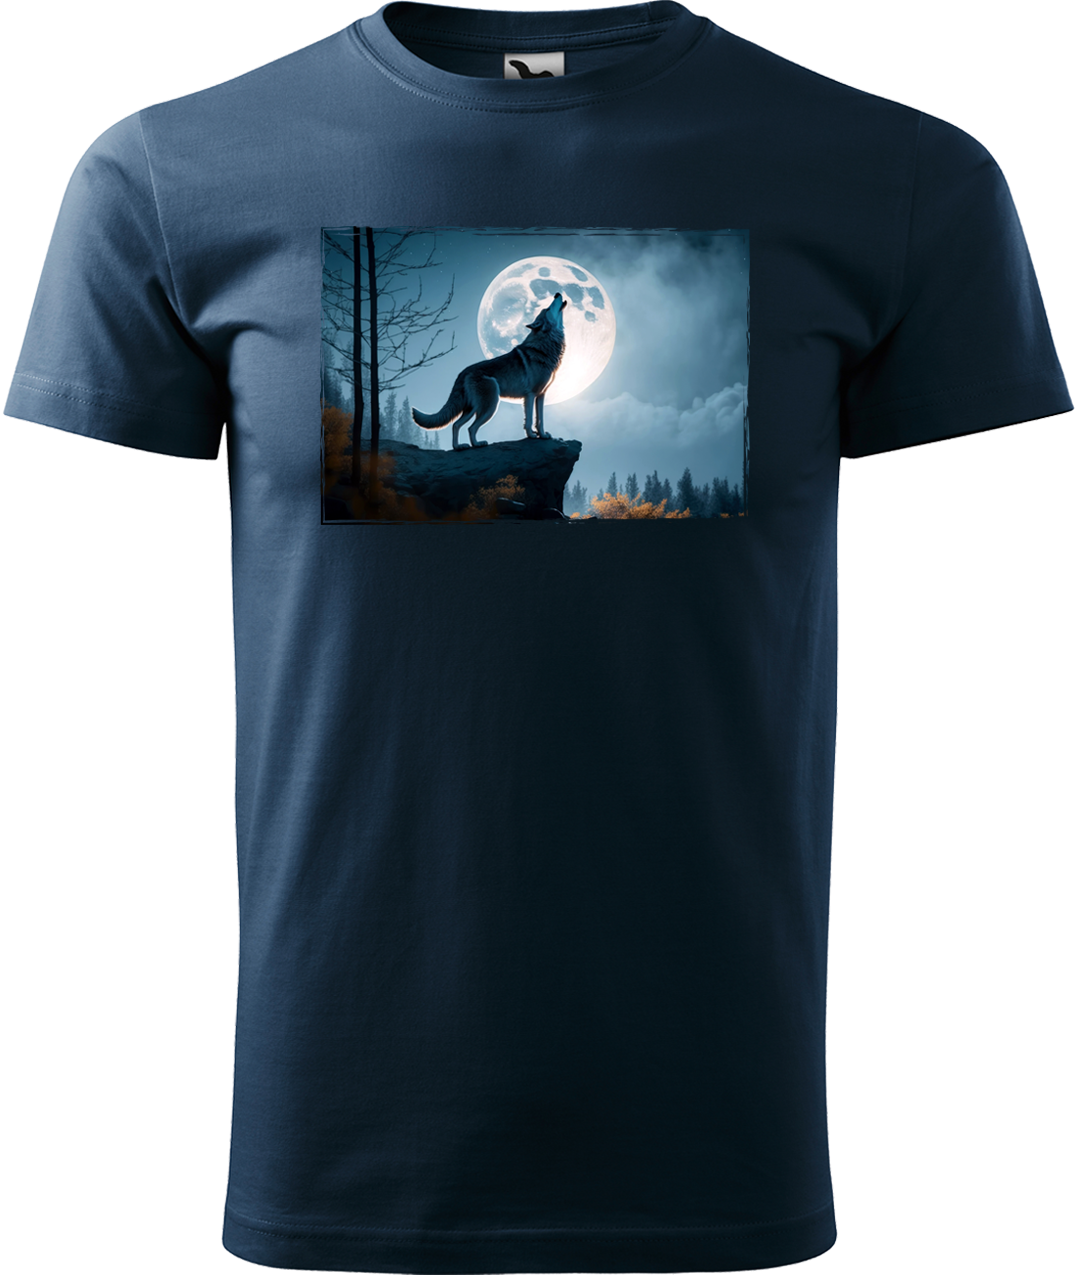 Pánské tričko s vlkem - Vyjící vlk Velikost: S, Barva: Námořní modrá (02)